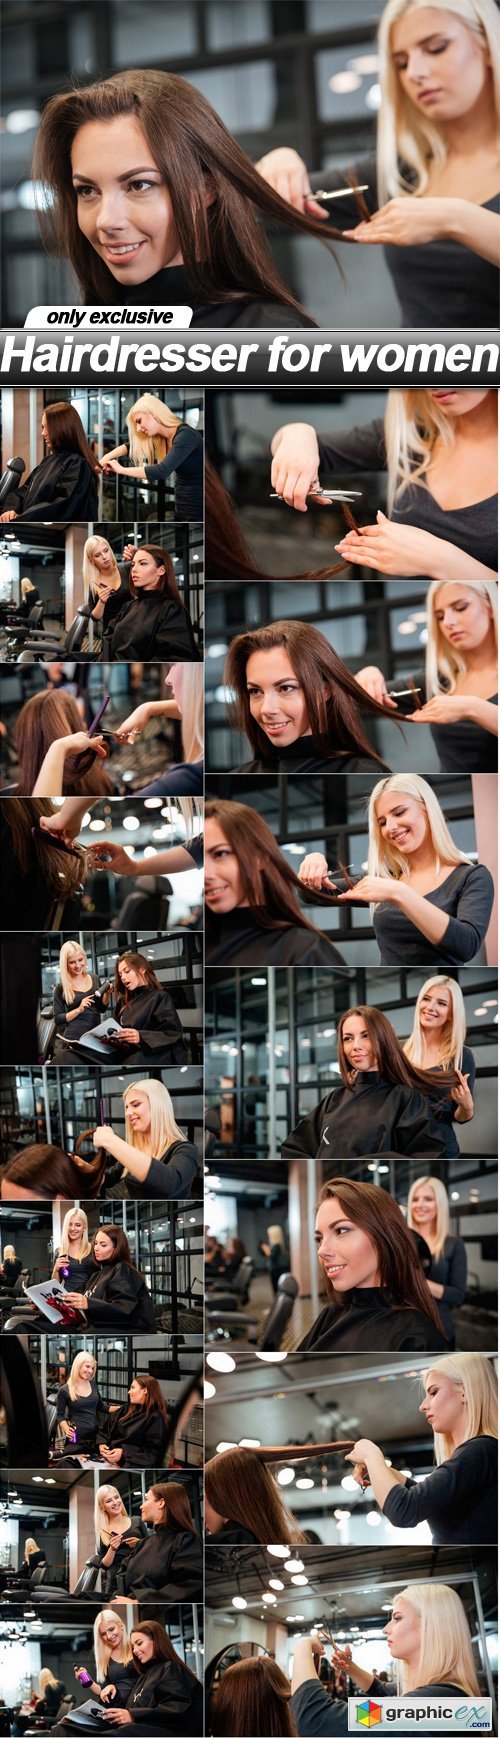 Hairdresser for women - 17 UHQ JPEG